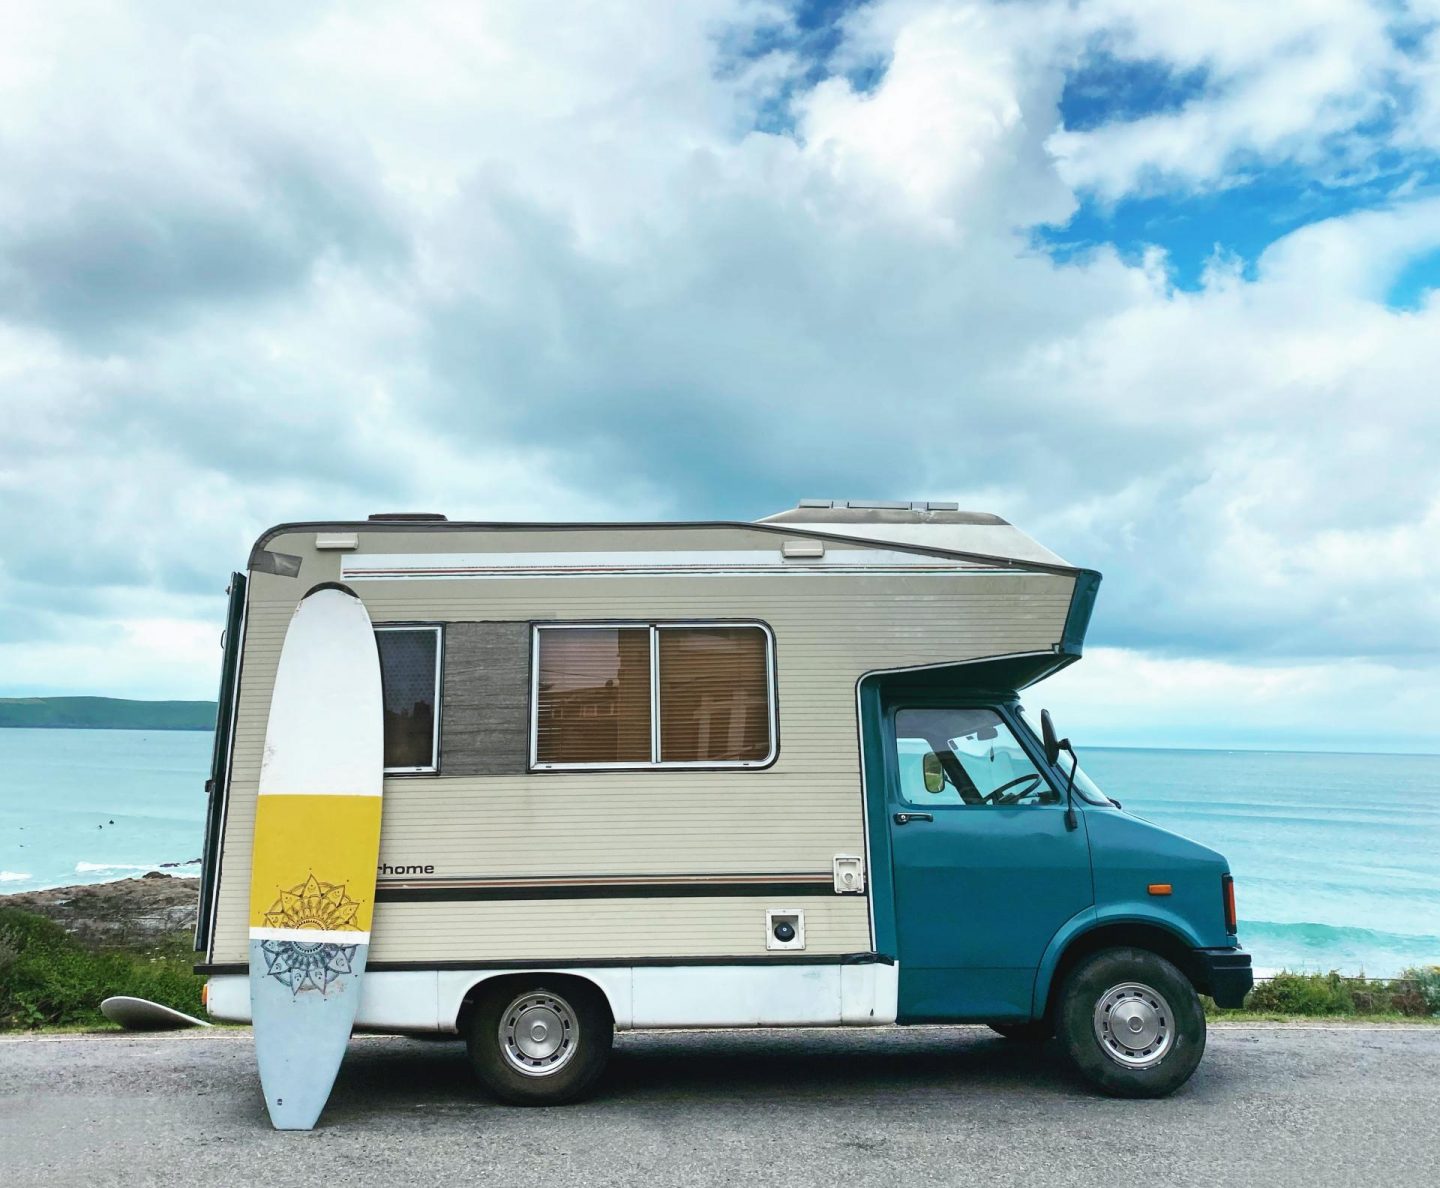 Evie The Van | How We Restored Our 1982 Bedford Campervan